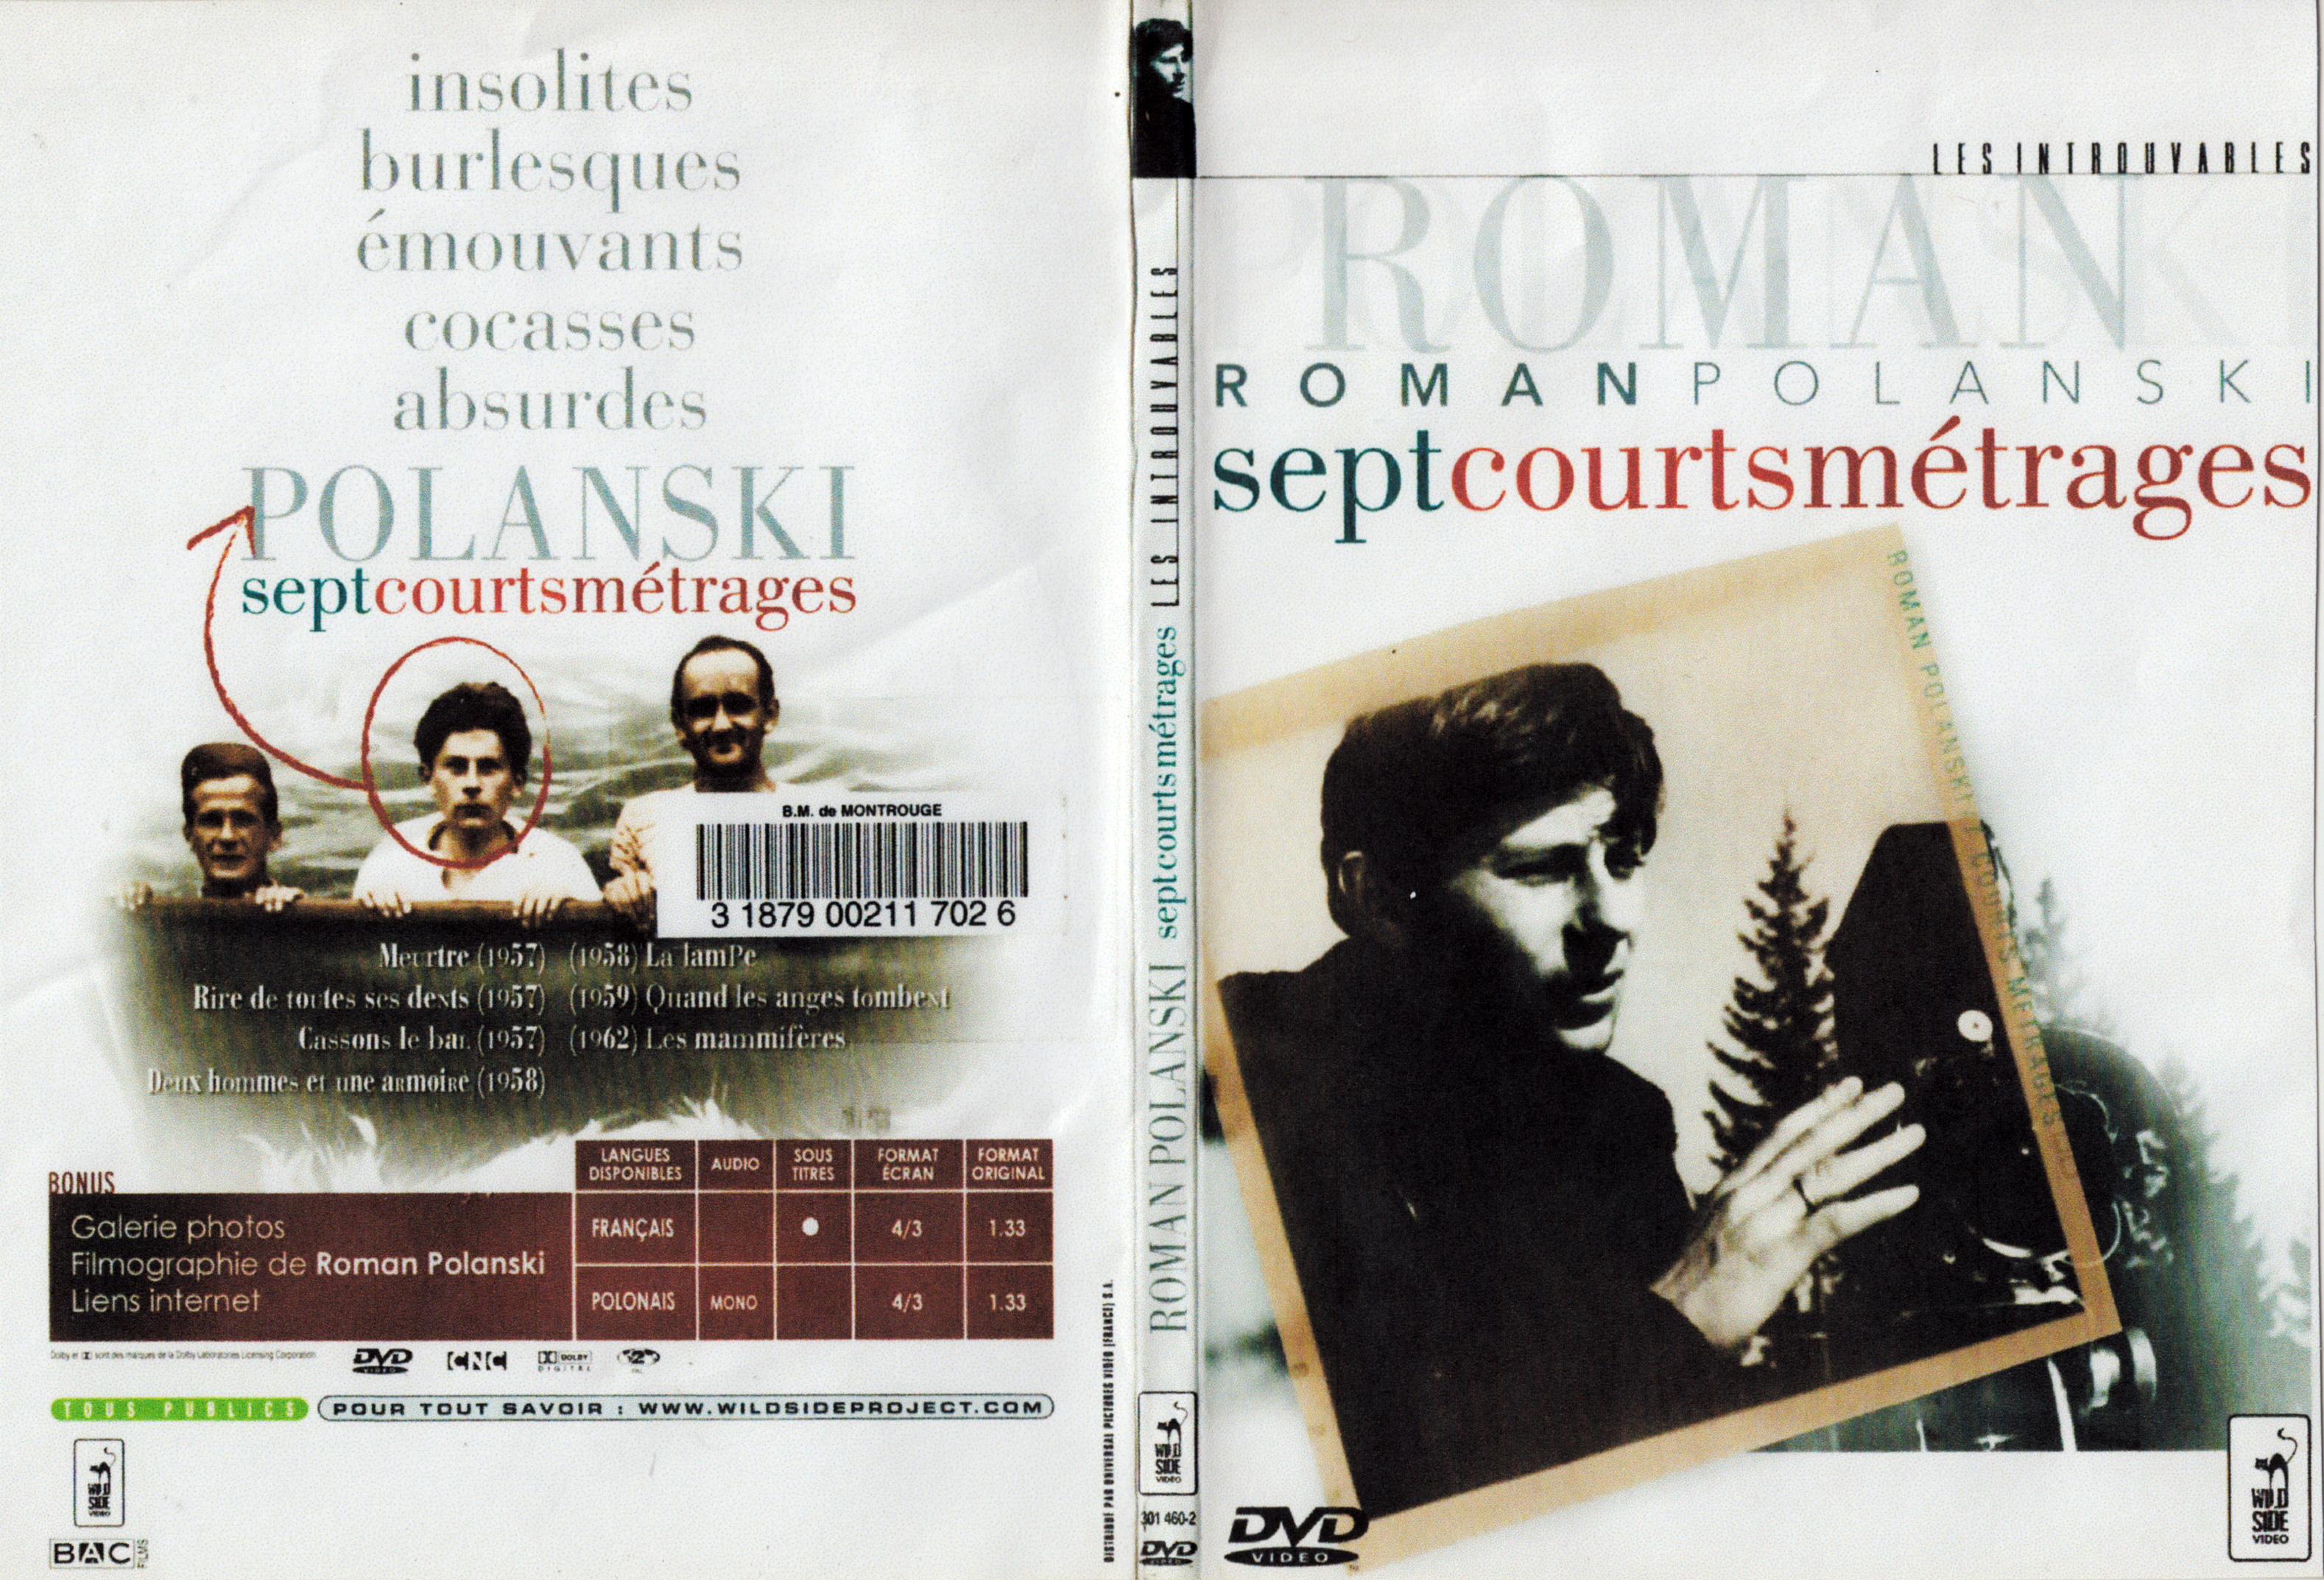 Jaquette DVD Roman Polanski - Sept courts mtrages